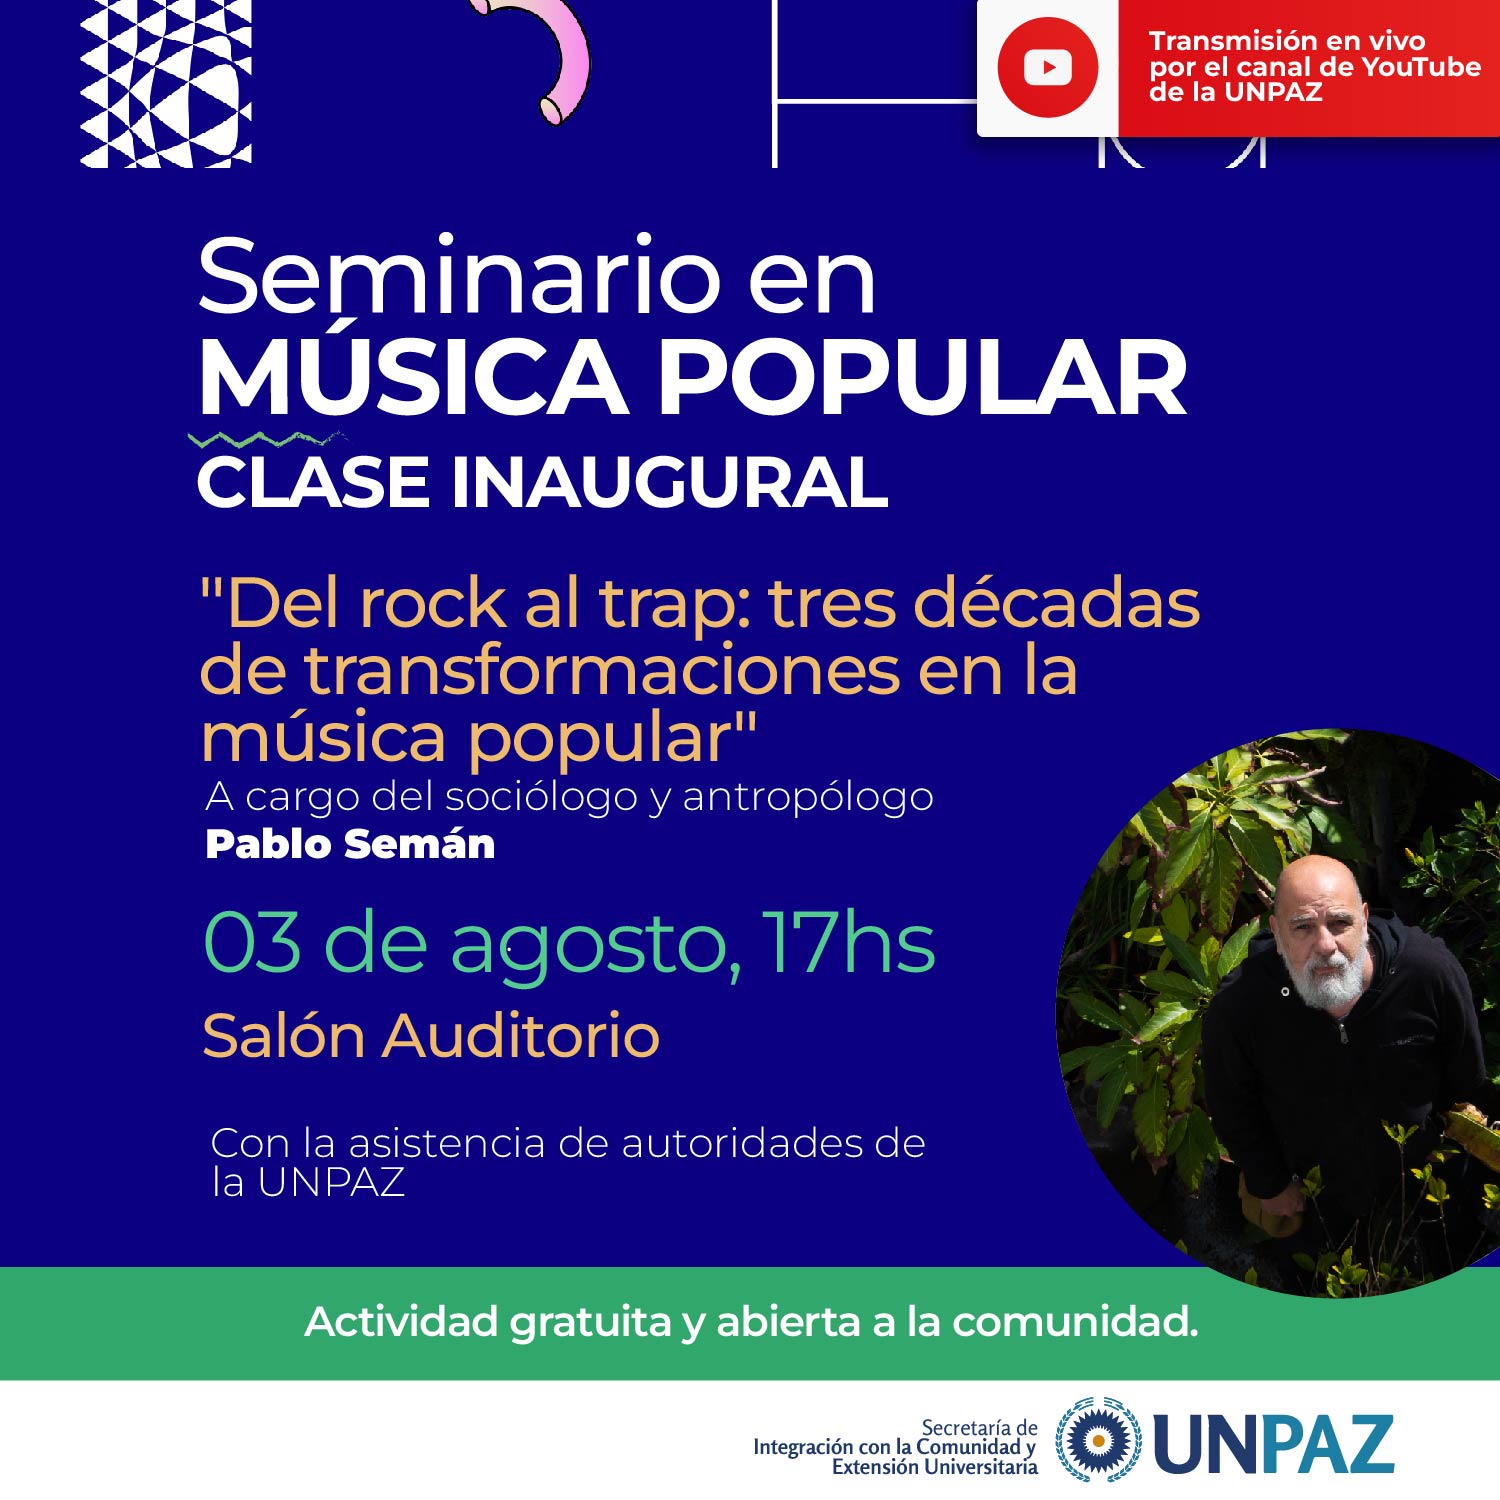 Clase inaugural del Seminario en Música Popular en vivo - UNPAZ